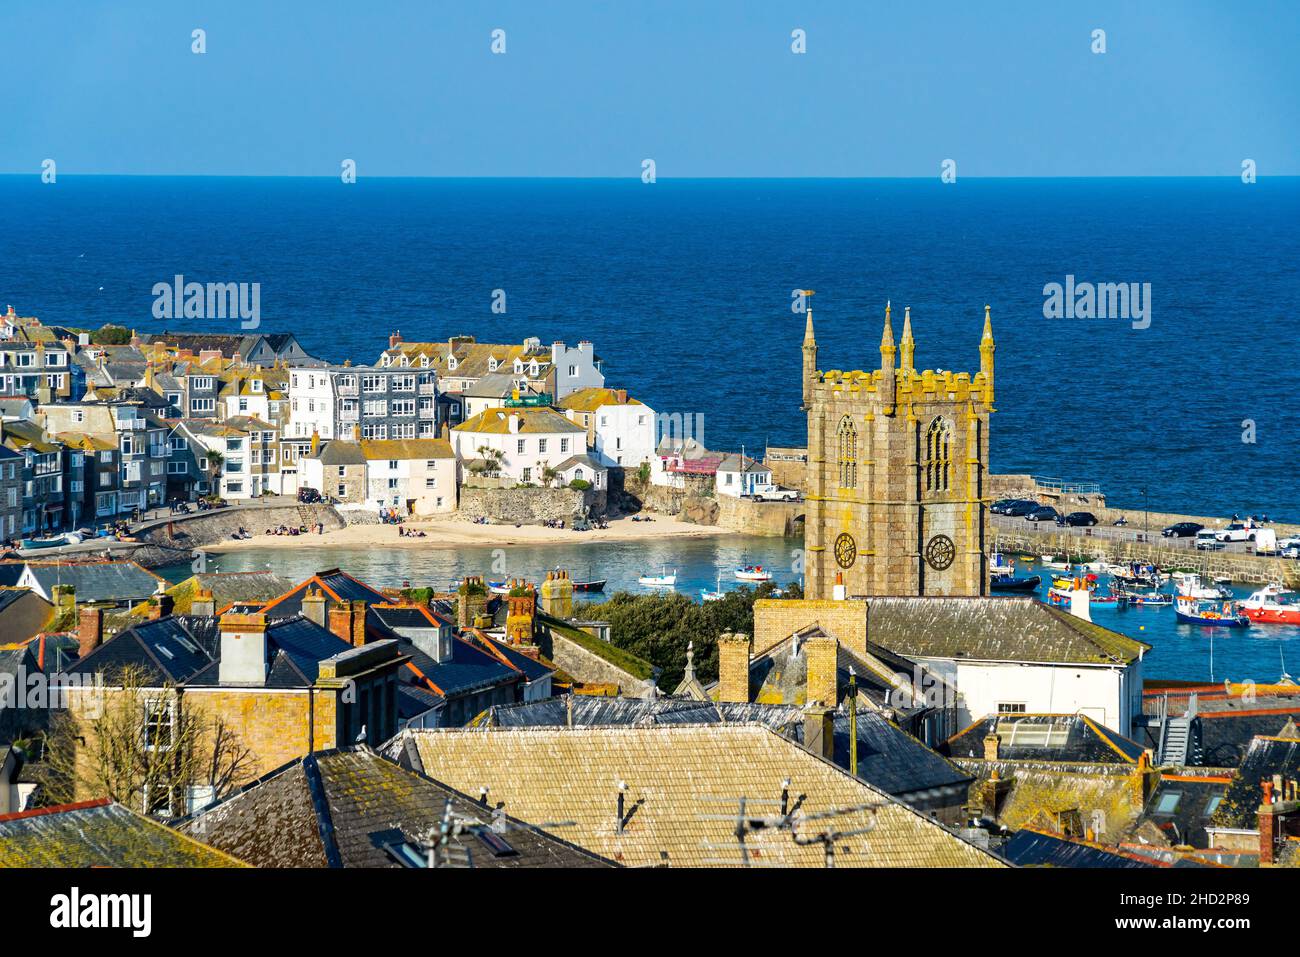 Vue sur la plage et la ville du port à St Ives Cornwall Angleterre Royaume-Uni Europe Banque D'Images